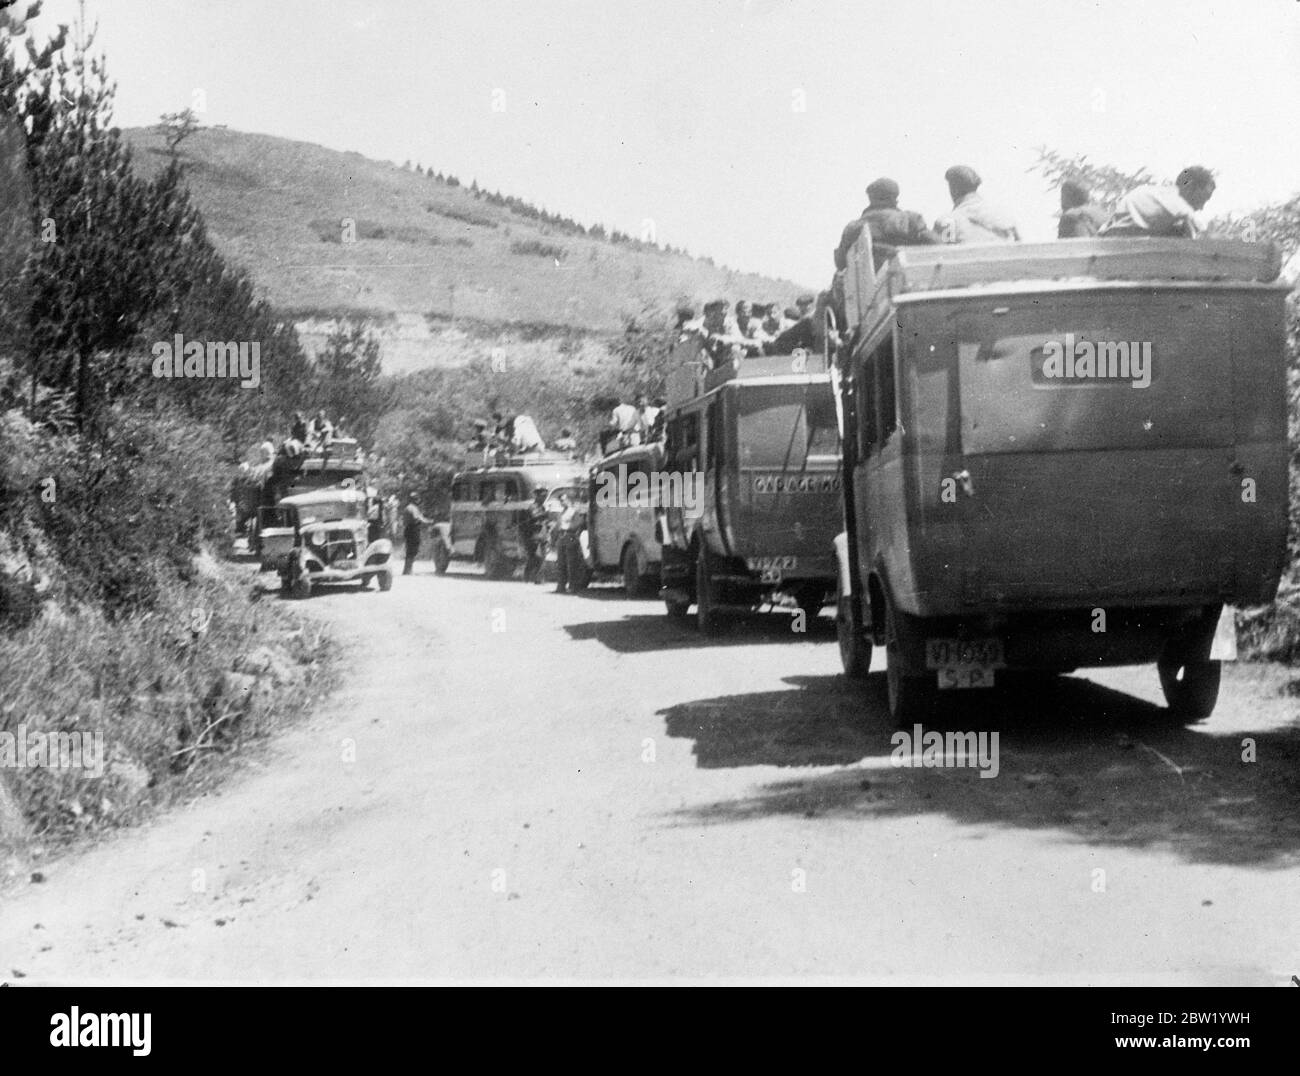 Verstärkung loyaler Regierungstruppen wird in Lieferwagen und Bussen zu Hilfe von Bilbao, der baskischen Hauptstadt, die trotz intensiver Bombardierungen durch Rebellen immer noch aushält, geeilt. 18 Juni 1937 Stockfoto